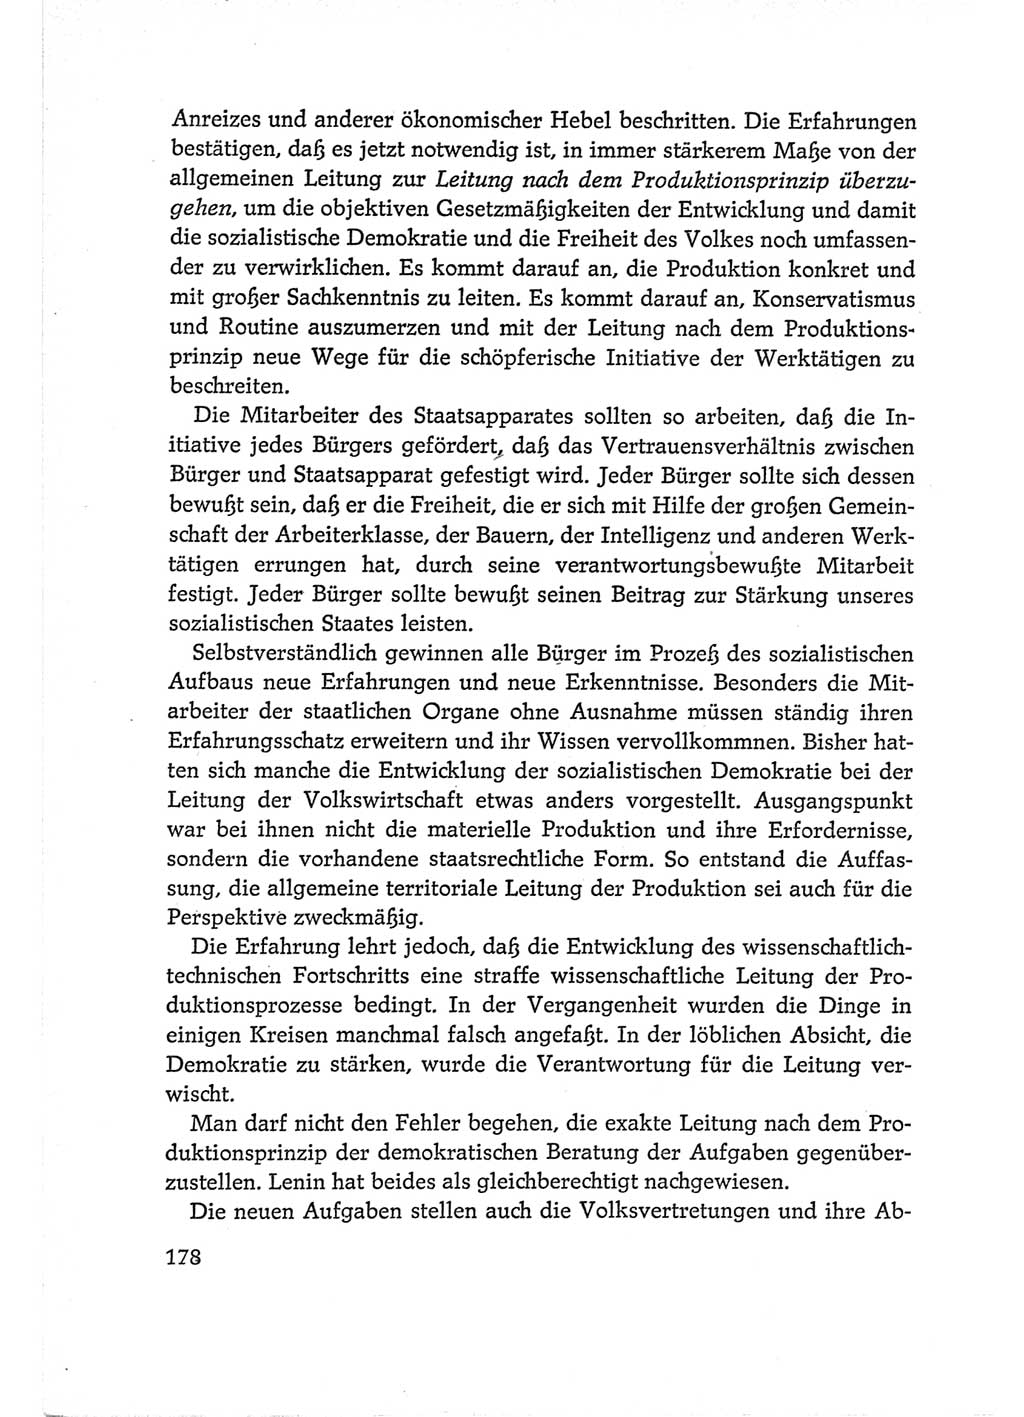 Protokoll der Verhandlungen des Ⅵ. Parteitages der Sozialistischen Einheitspartei Deutschlands (SED) [Deutsche Demokratische Republik (DDR)] 1963, Band Ⅰ, Seite 178 (Prot. Verh. Ⅵ. PT SED DDR 1963, Bd. Ⅰ, S. 178)